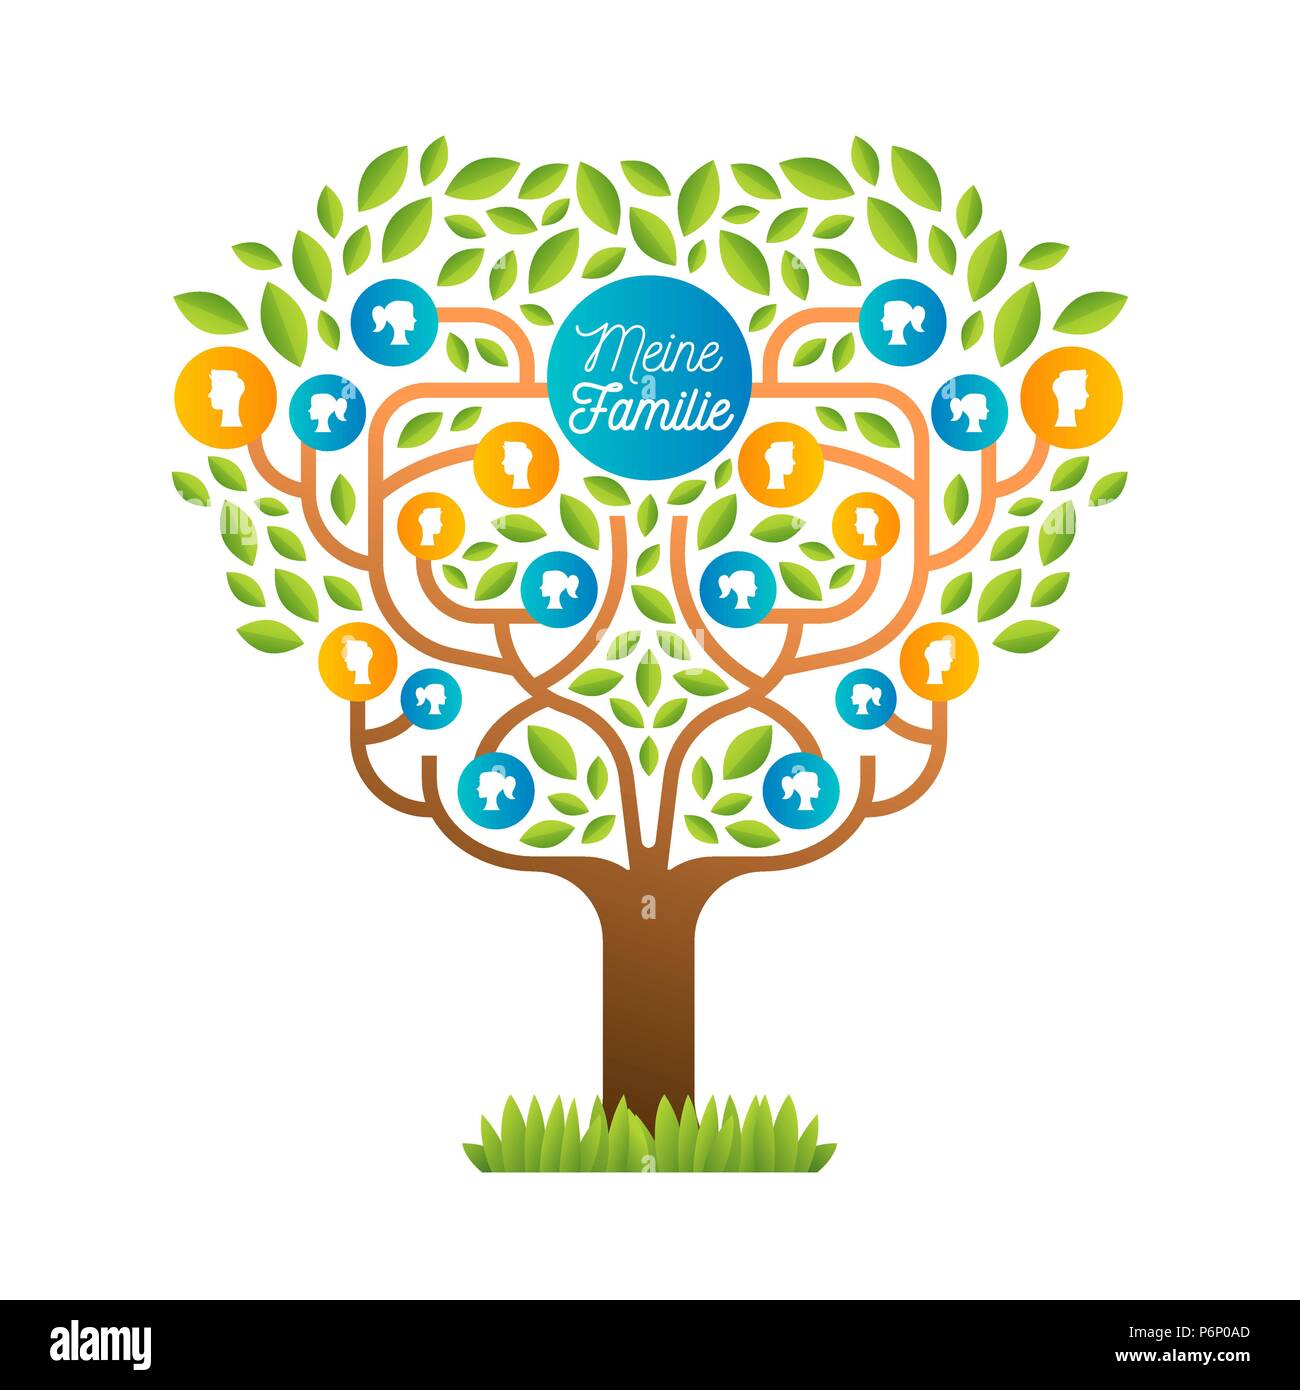 Big Family Tree Vorlage in deutscher Sprache, Illustration Konzept mit Leuten die Symbole und bunten grüne Blätter für das Leben Generationen Geschichte. EPS 10 vect Stock Vektor